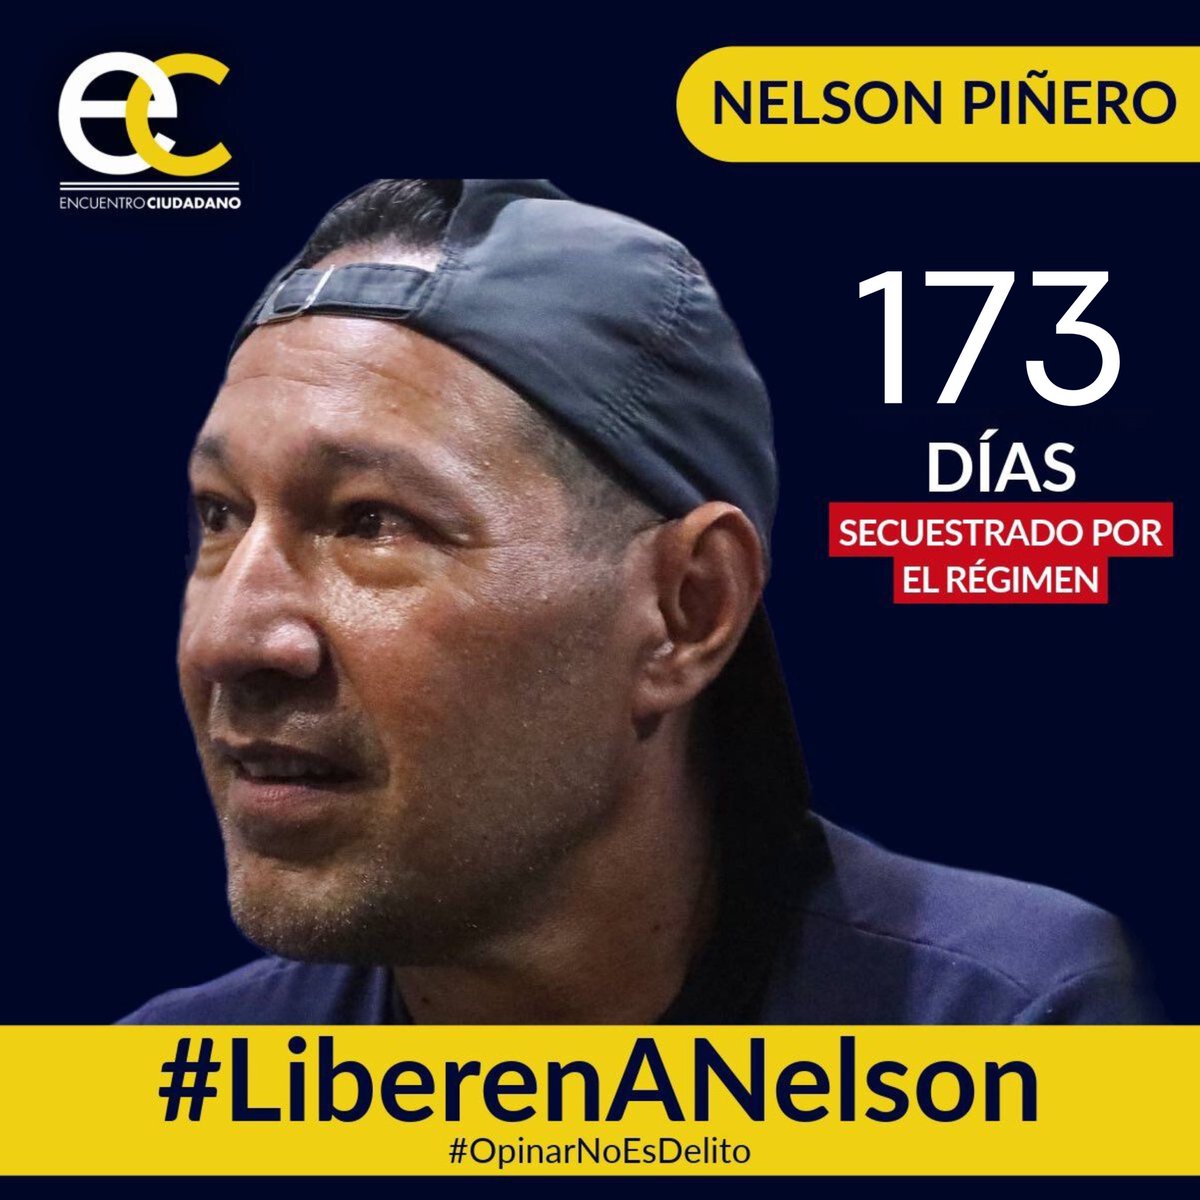 #12May | Nelson Piñero, activista de #EncuentroCiudadano, lleva 173 días secuestrado por el régimen solo por emitir sus opiniones en redes sociales. #OpinarNoEsDelito y por eso exigimos su liberación inmediata. #LiberenANelson #LiberenALosPresosPolíticos